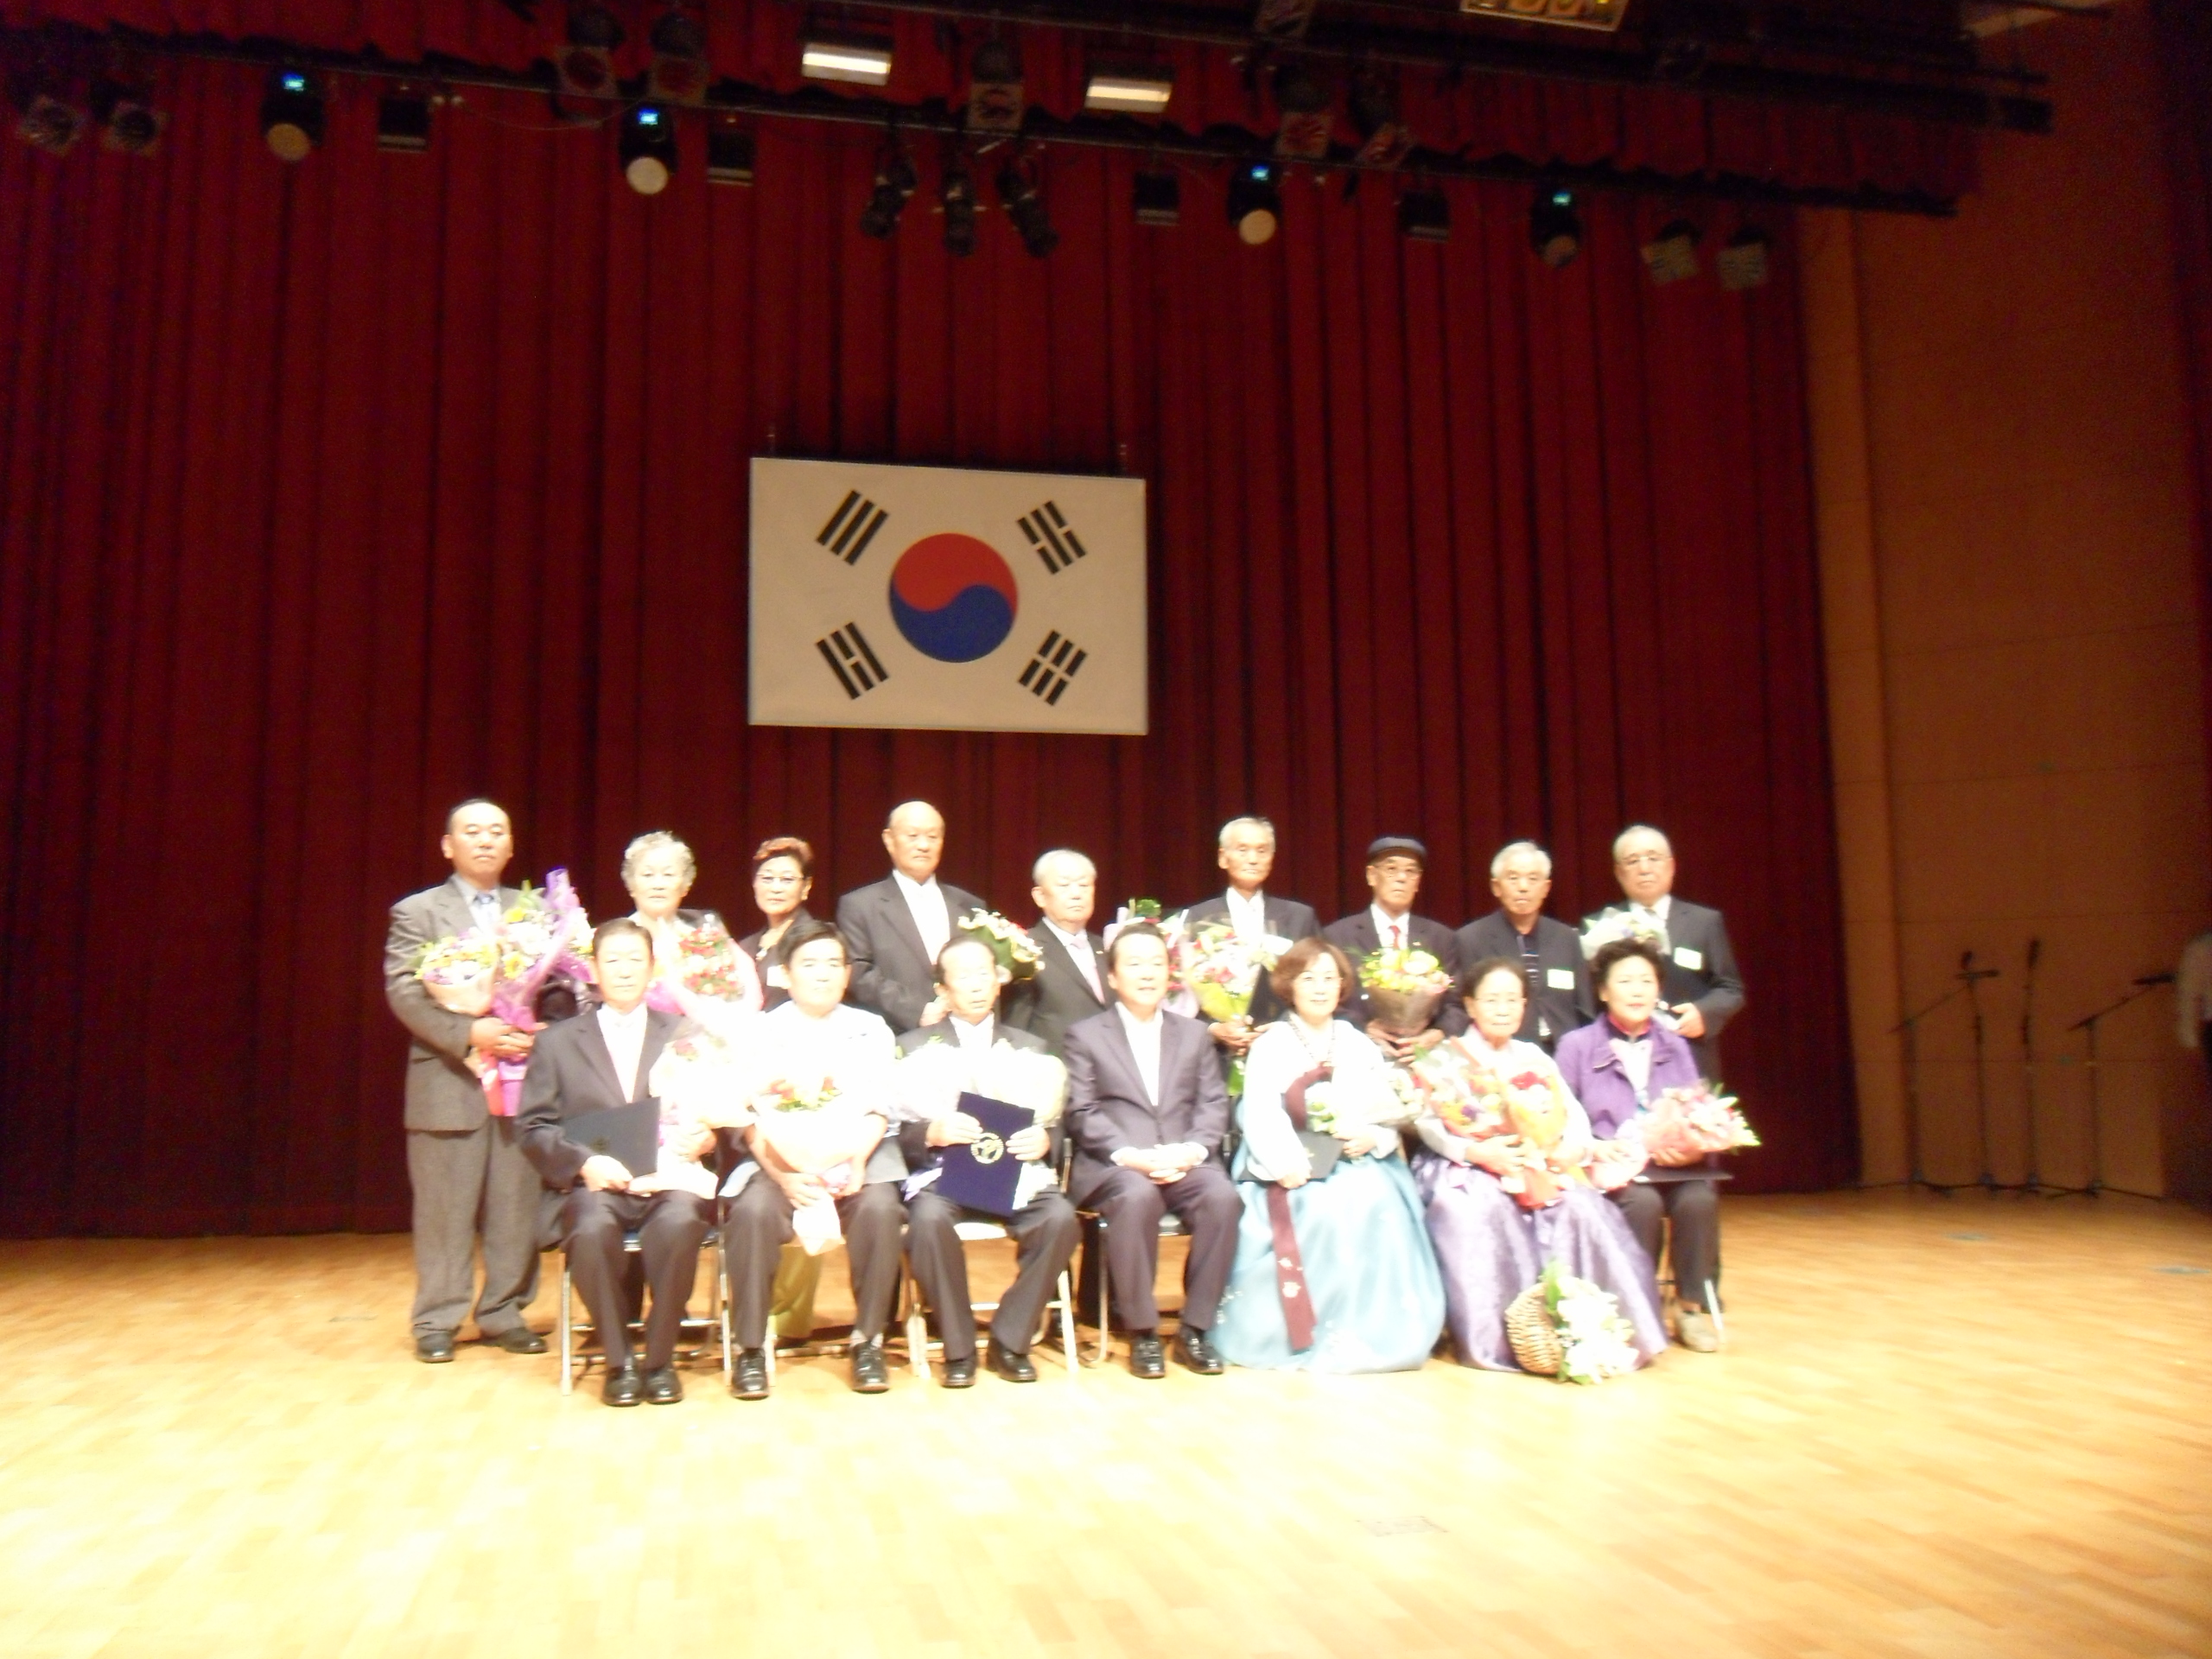 2012년 제16회 노인의날 기념 보건복지부장관 자원봉사부문 수상